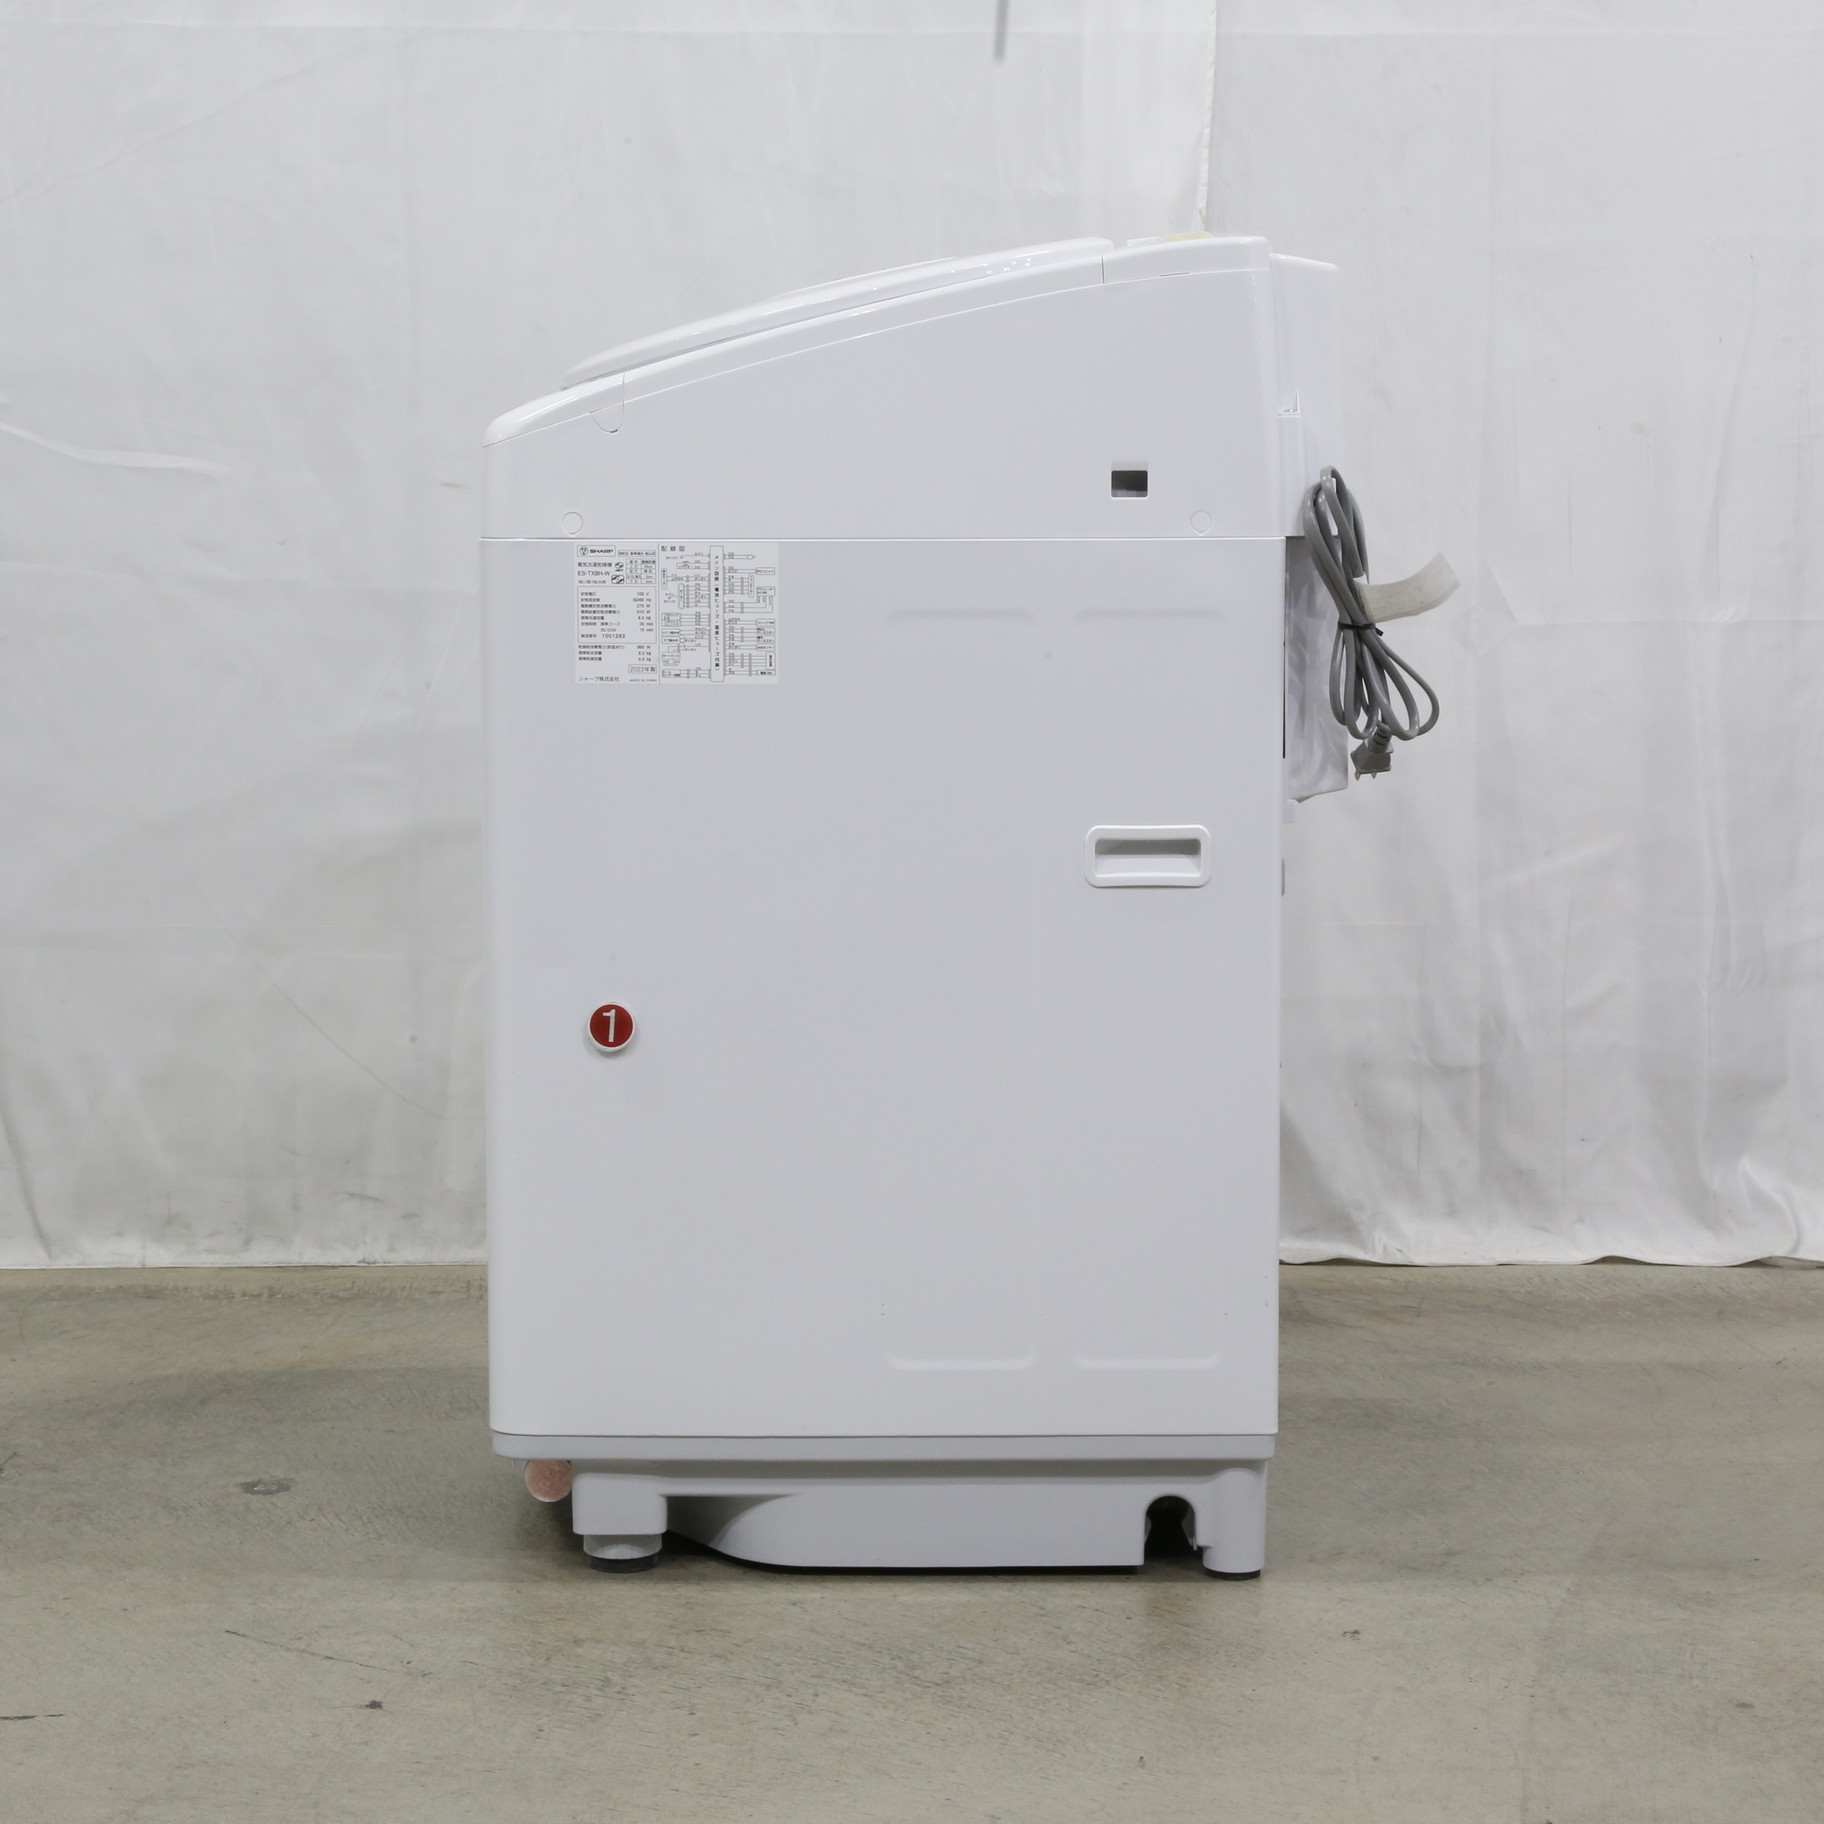 〔展示品〕 ES-TX8H-W 縦型乾燥洗濯機 ホワイト系 [洗濯8.0kg ／乾燥4.5kg ／ヒータ乾燥（排気タイプ）上開き] ES-TX8H-W  ［洗濯8.0kg ／乾燥4.5kg ／ヒーター乾燥(排気タイプ) ／上開き］